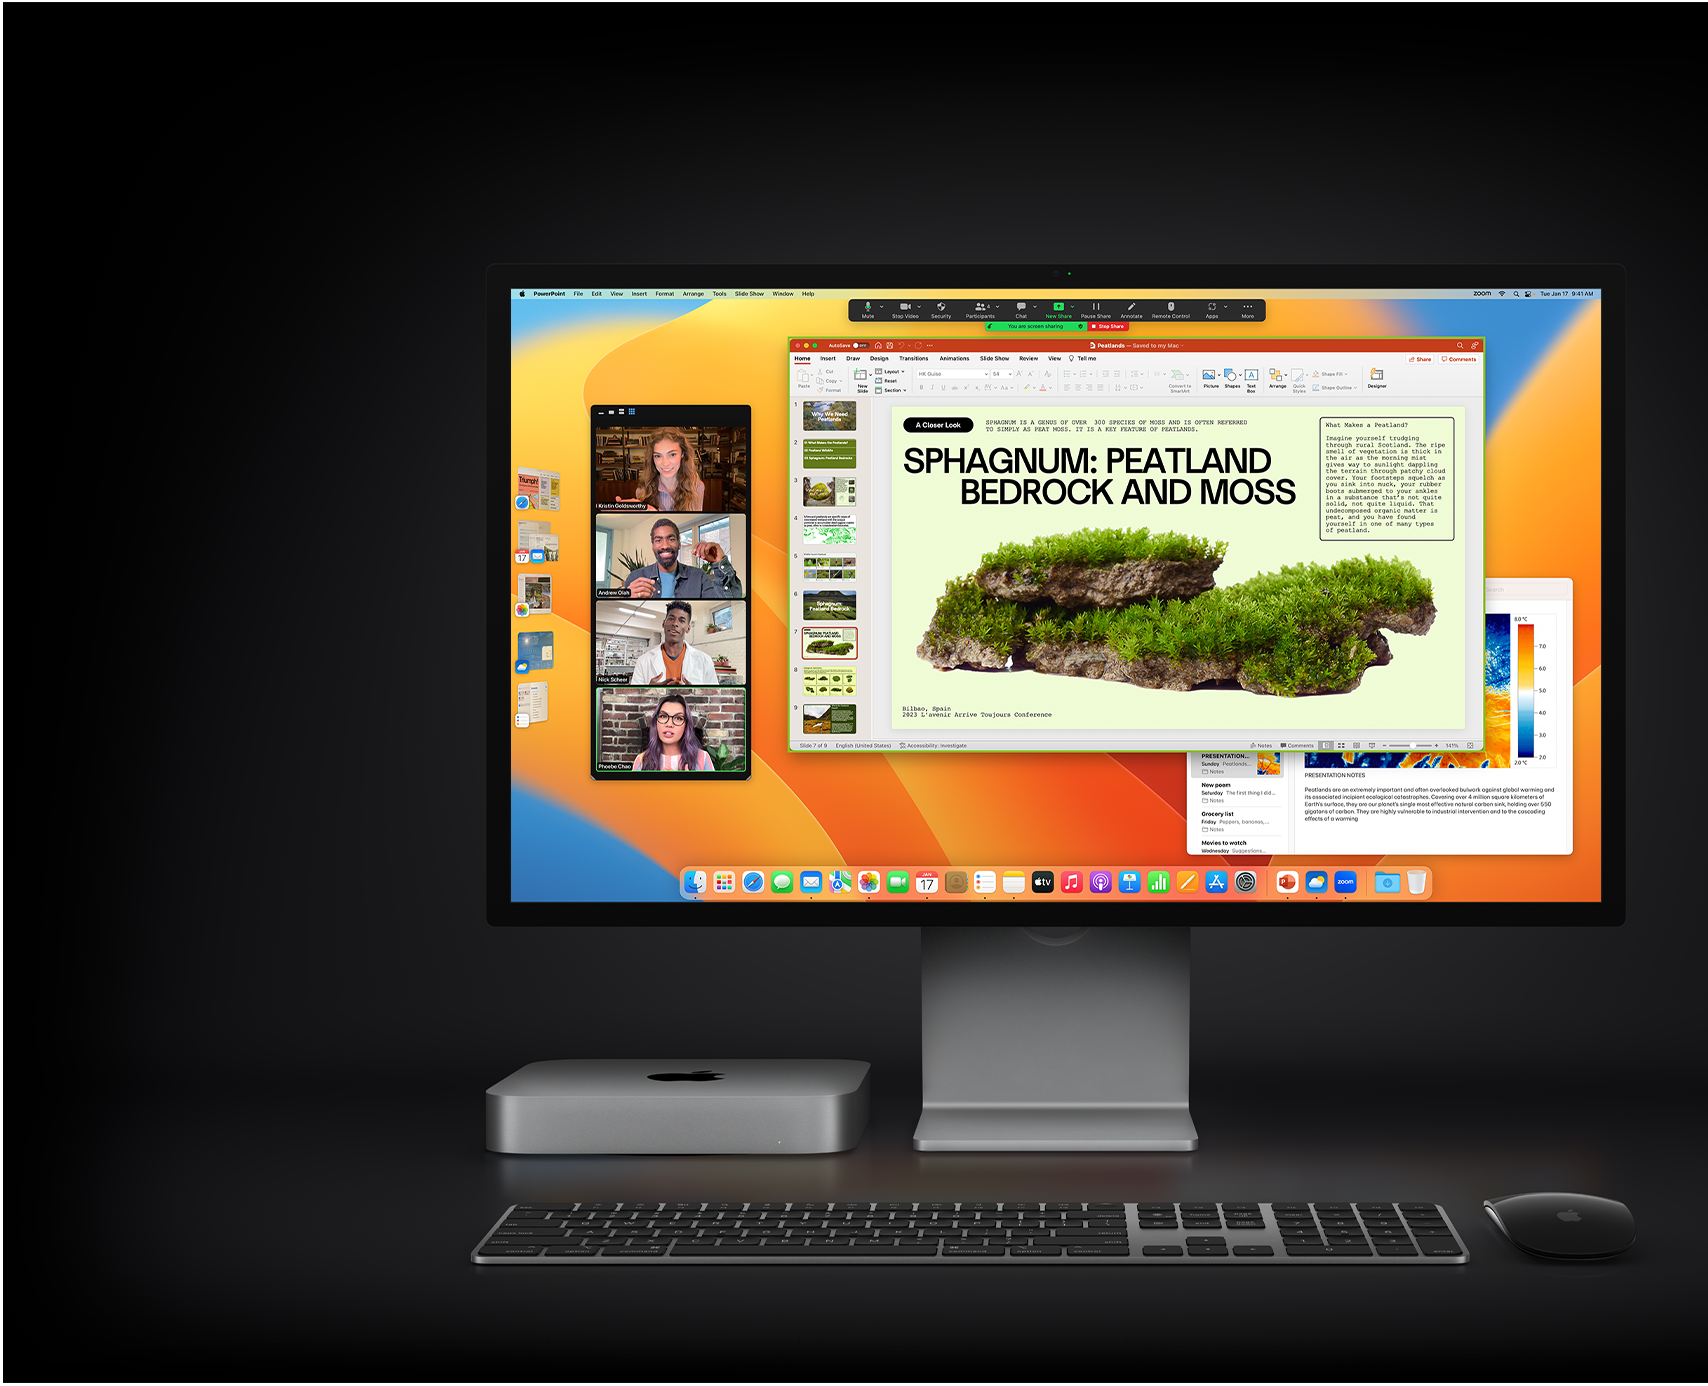 Der Mac mini mit Magic Mouse, Magic Keyboard und Studio Display, auf dem eine Microsoft PowerPoint Präsentation zu sehen ist, die in einem Zoom Meeting geteilt wird. Im Hintergrund ist die Notizen App geöffnet.